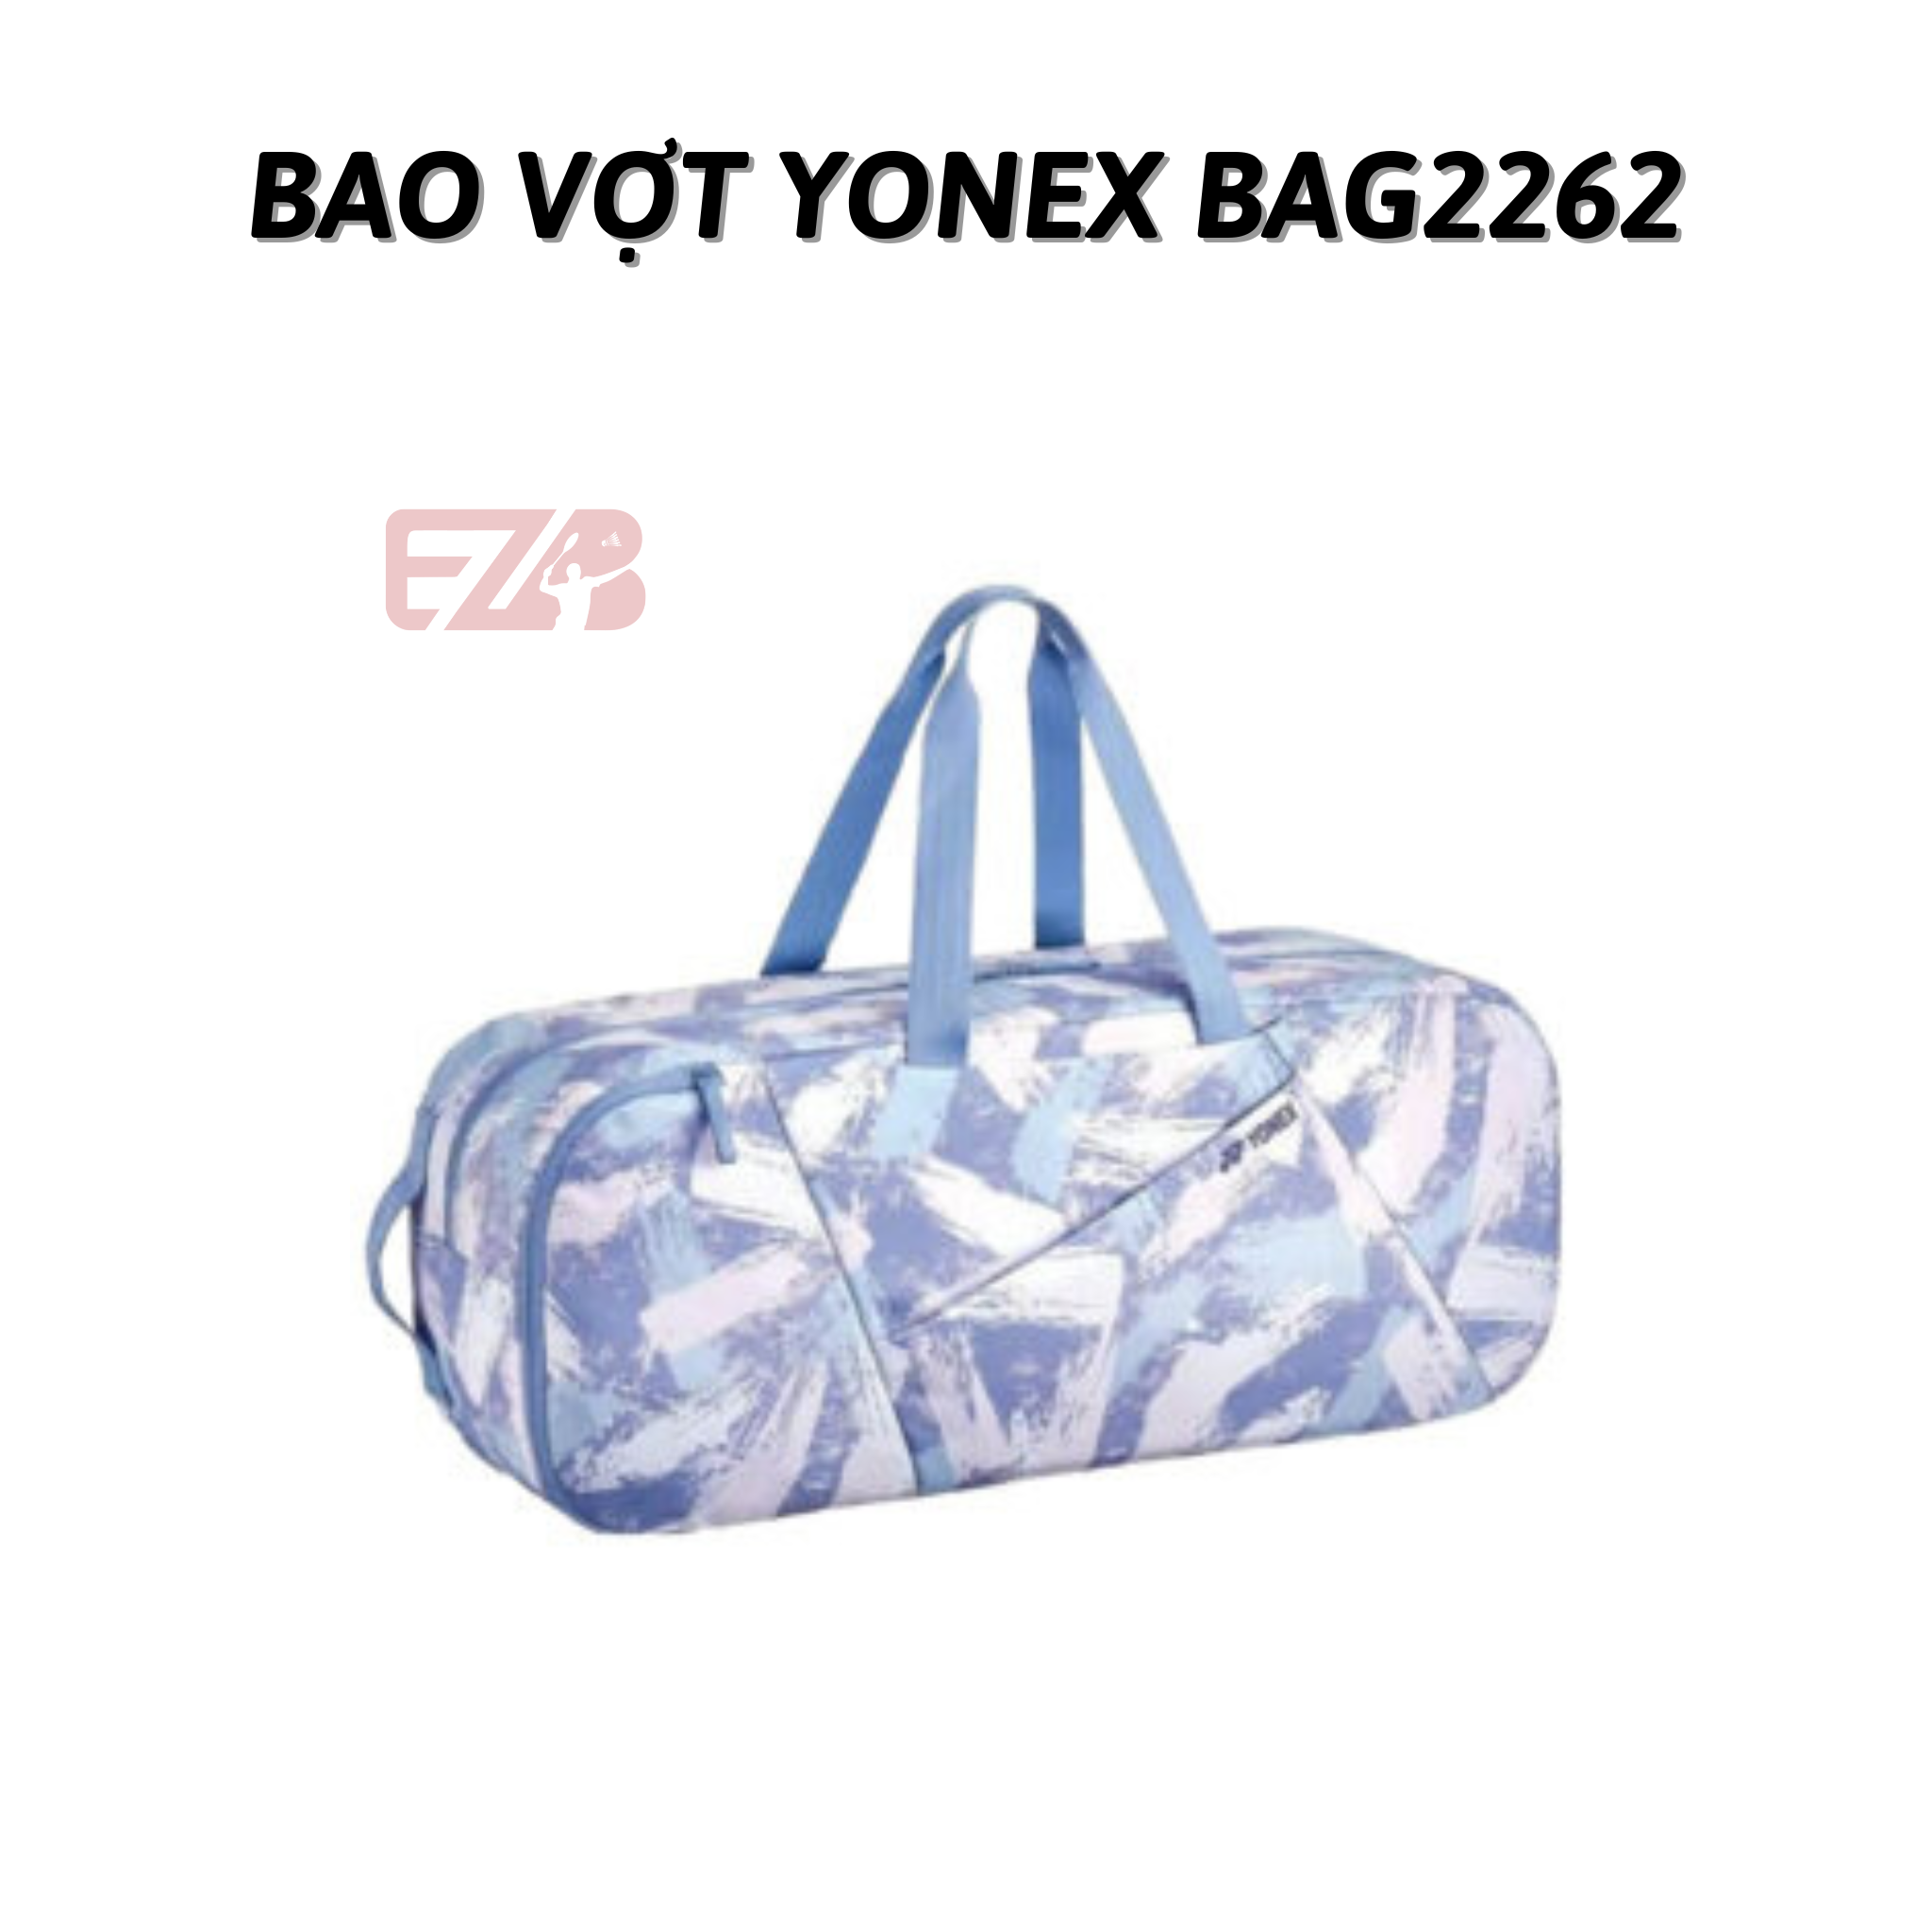 BAO VỢT CẦU LÔNG YONEX BAG2262